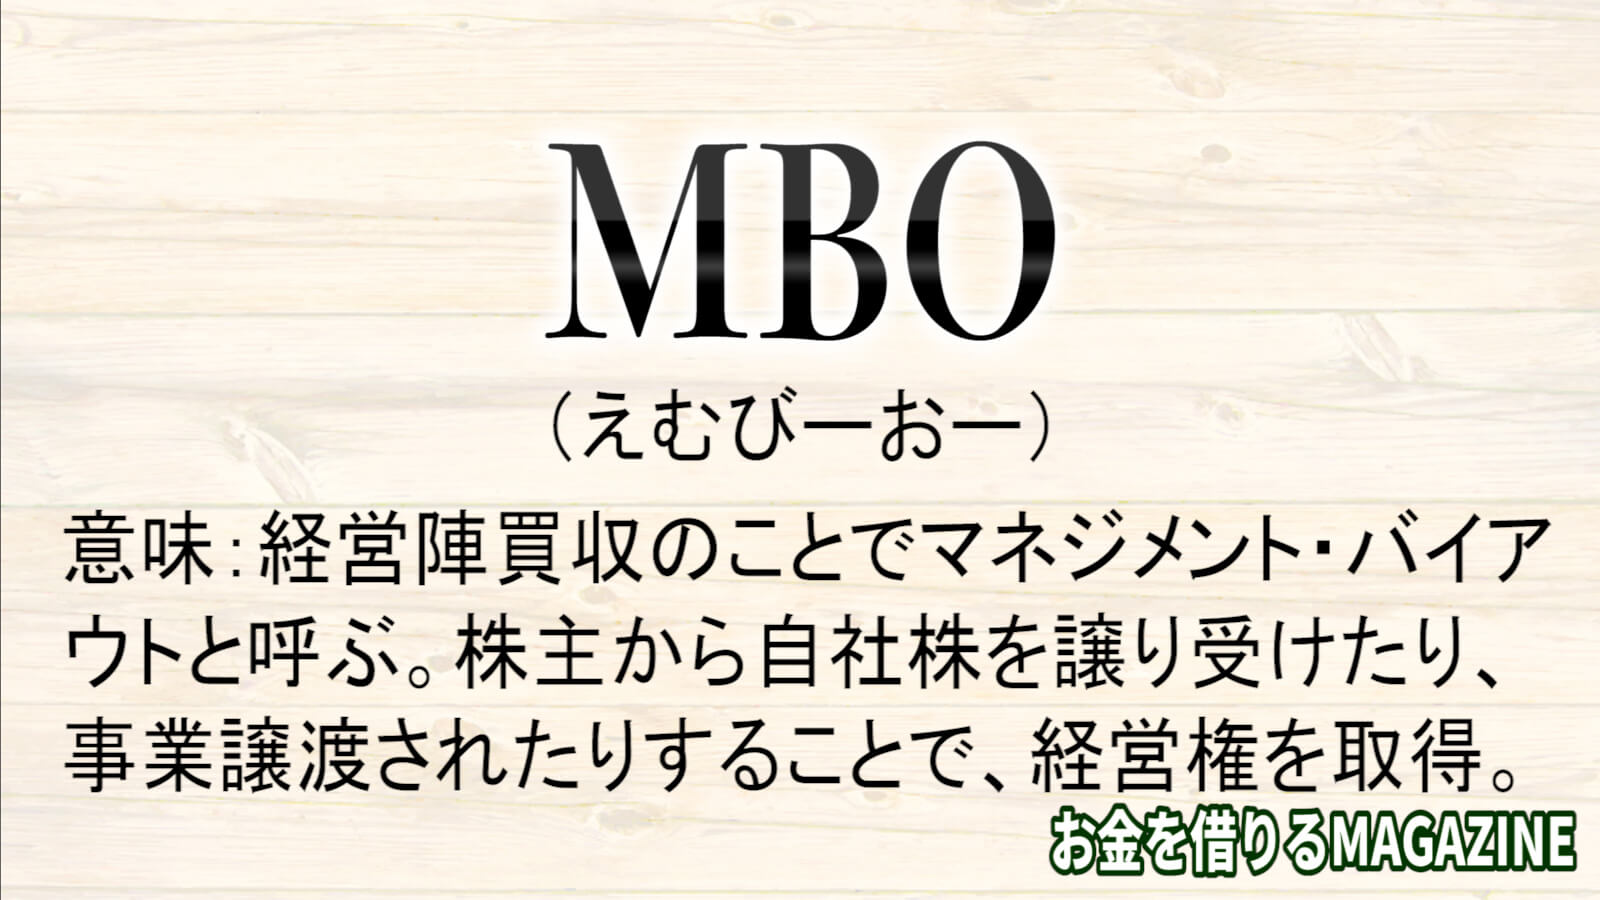 mboとは、経営陣買収のことでマネジメント・バイア ウトと呼ぶ。株主から自社株を譲り受けたり、 事業譲渡されたりすることで、経営権を取得。